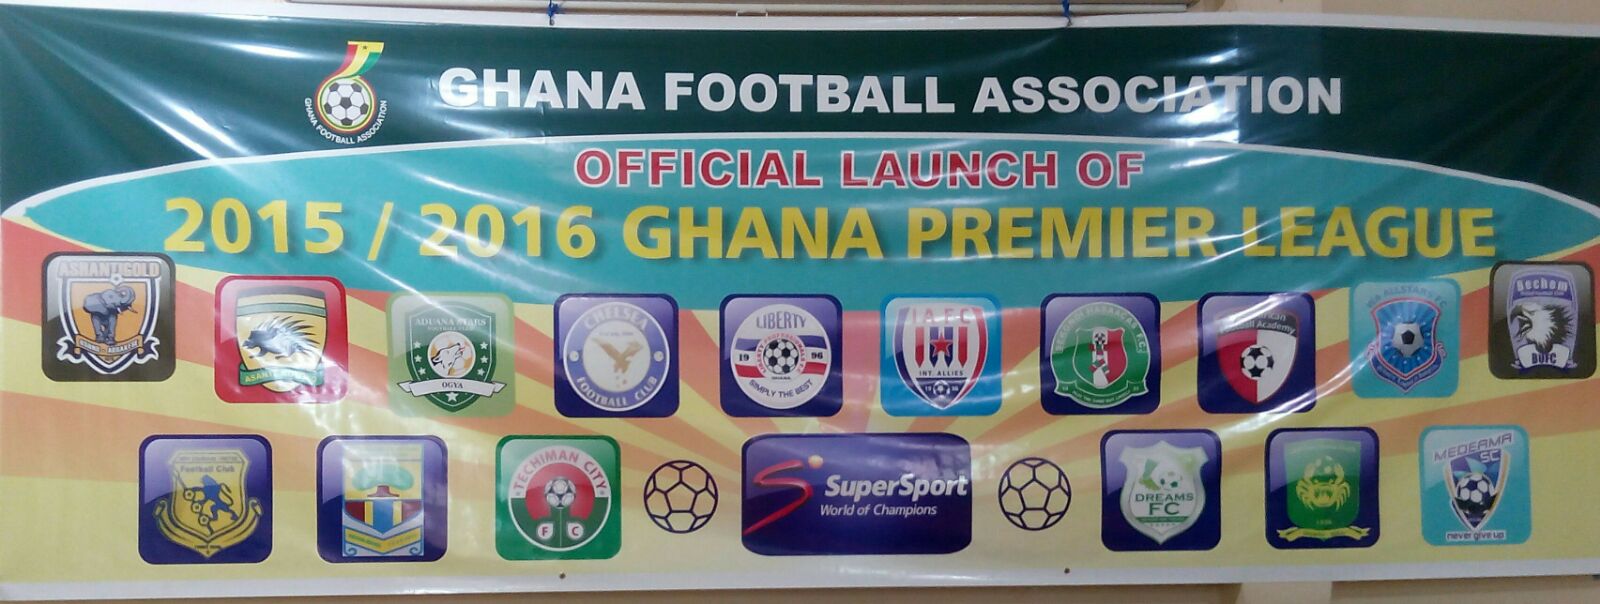 Major highlights from the launch of the 2015/16 Ghana Premier League season - Ghana Latest